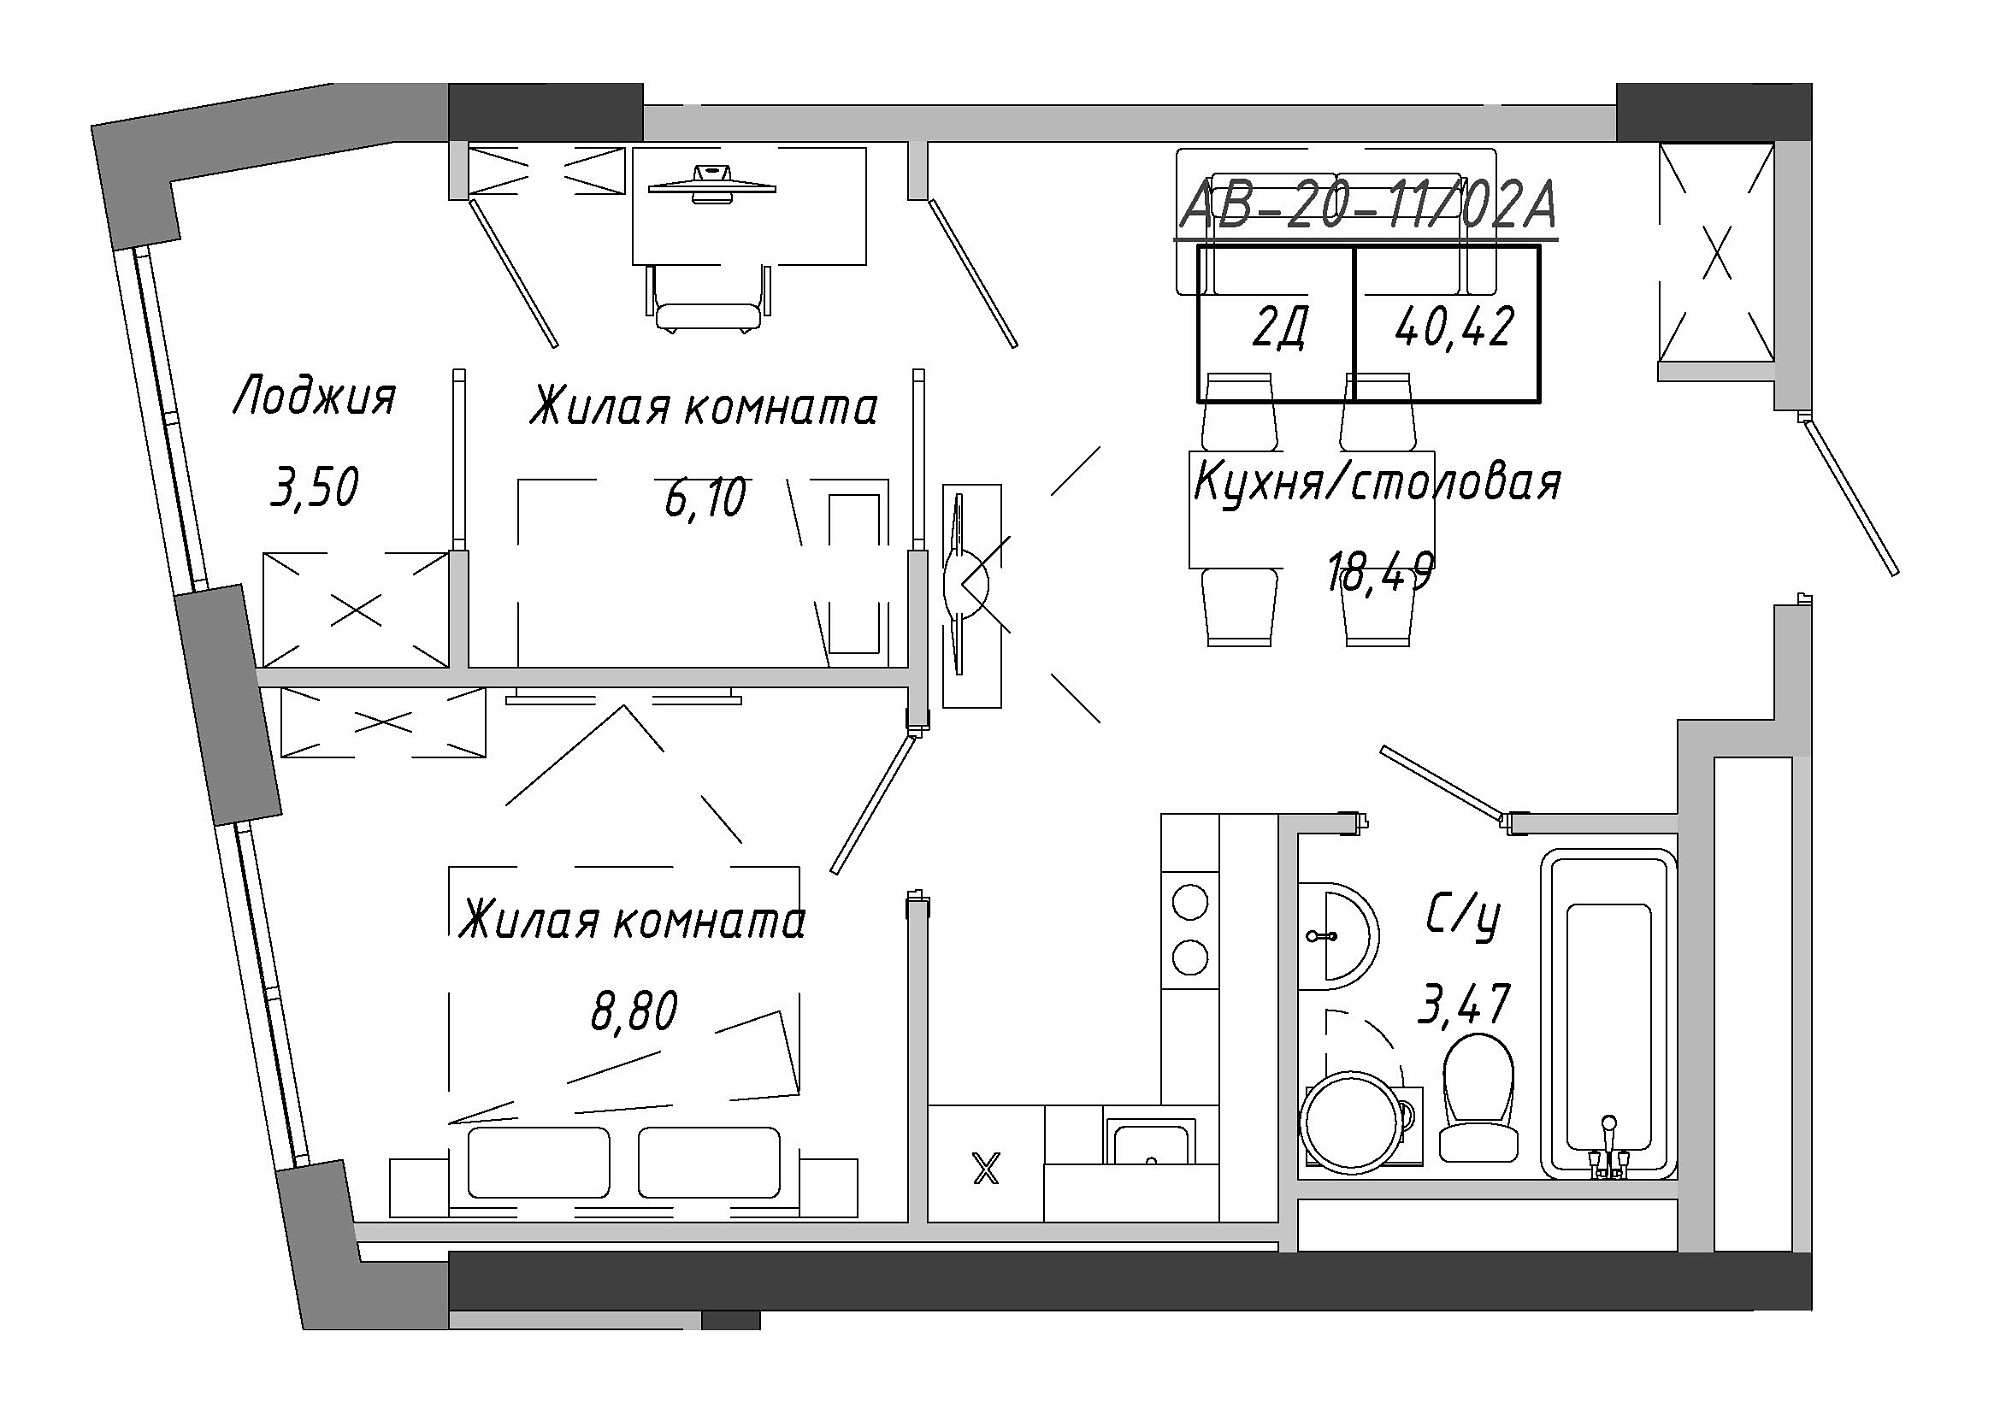 Планировка 2-к квартира площей 41.9м2, AB-20-11/0002а.